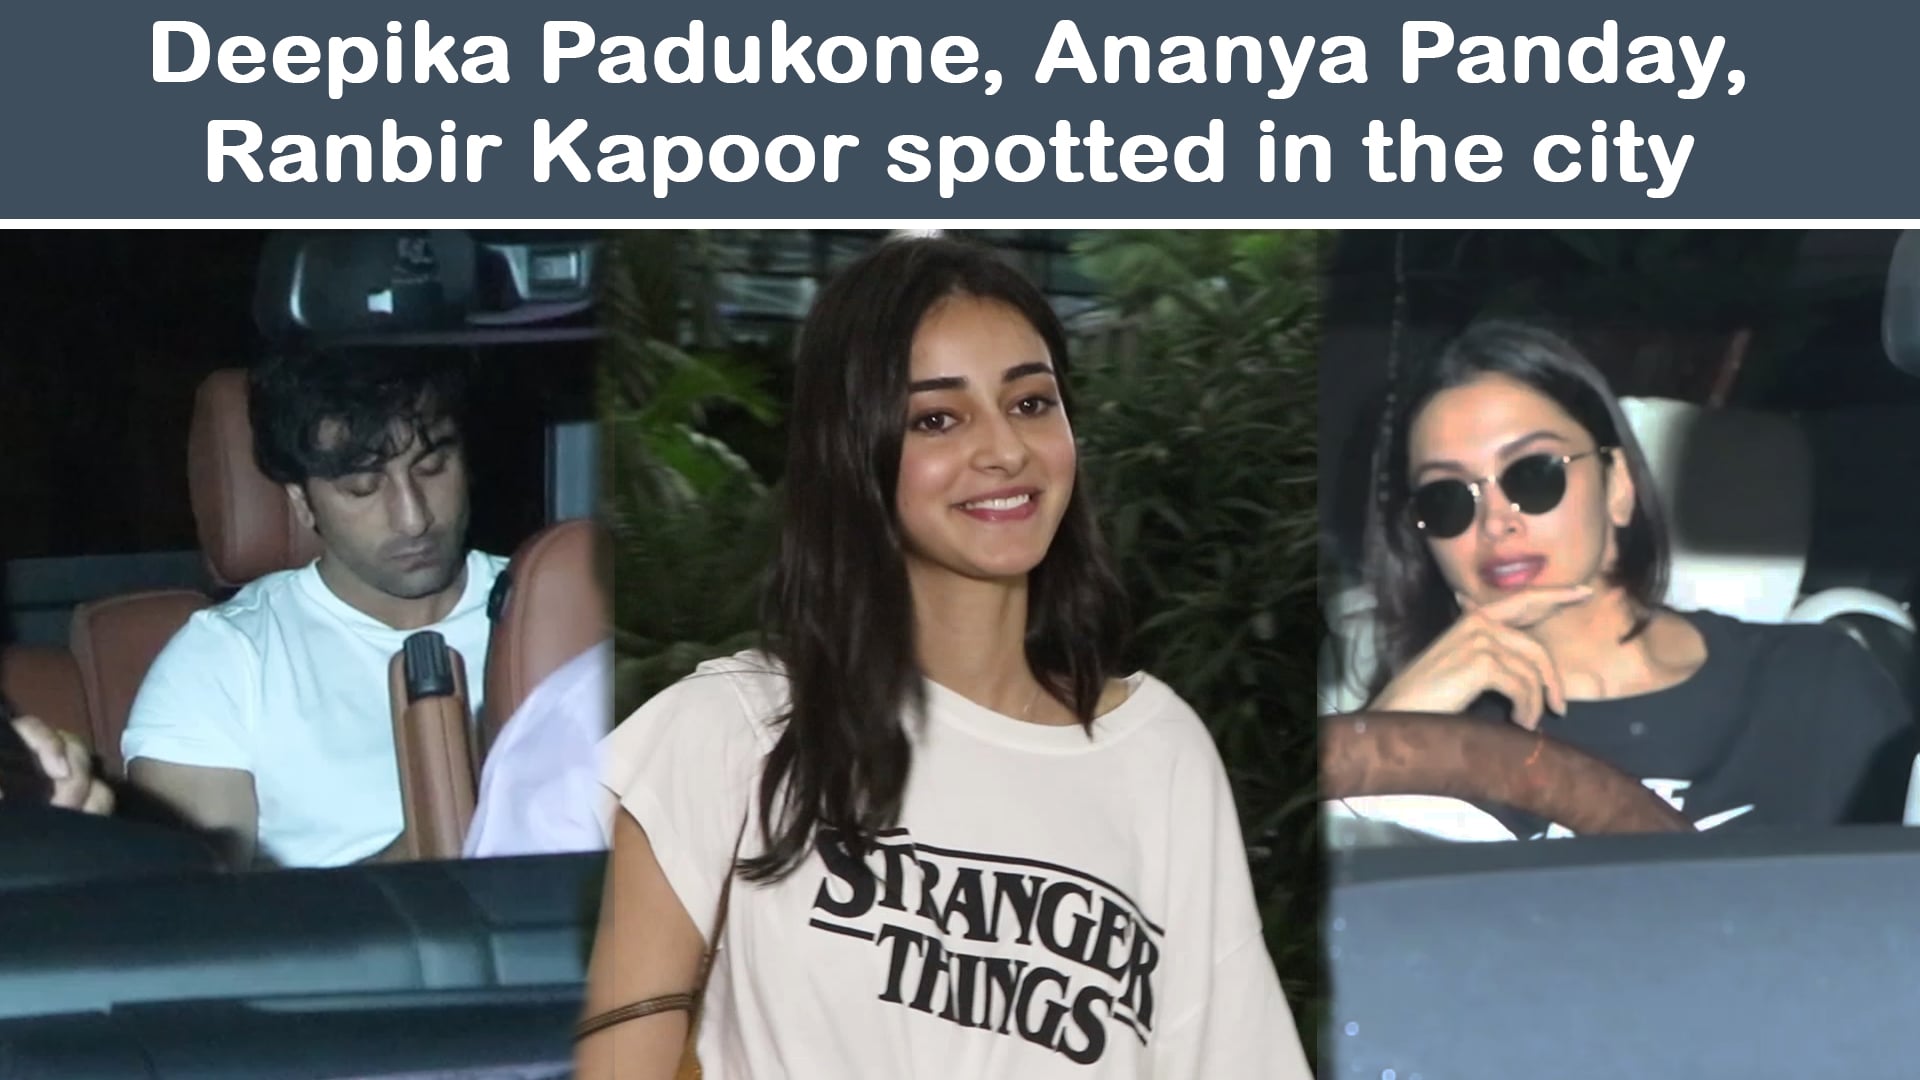 Celeb spotting: Deepika Padukone, Ranbir Kapoor, Shahid Kapoor and others